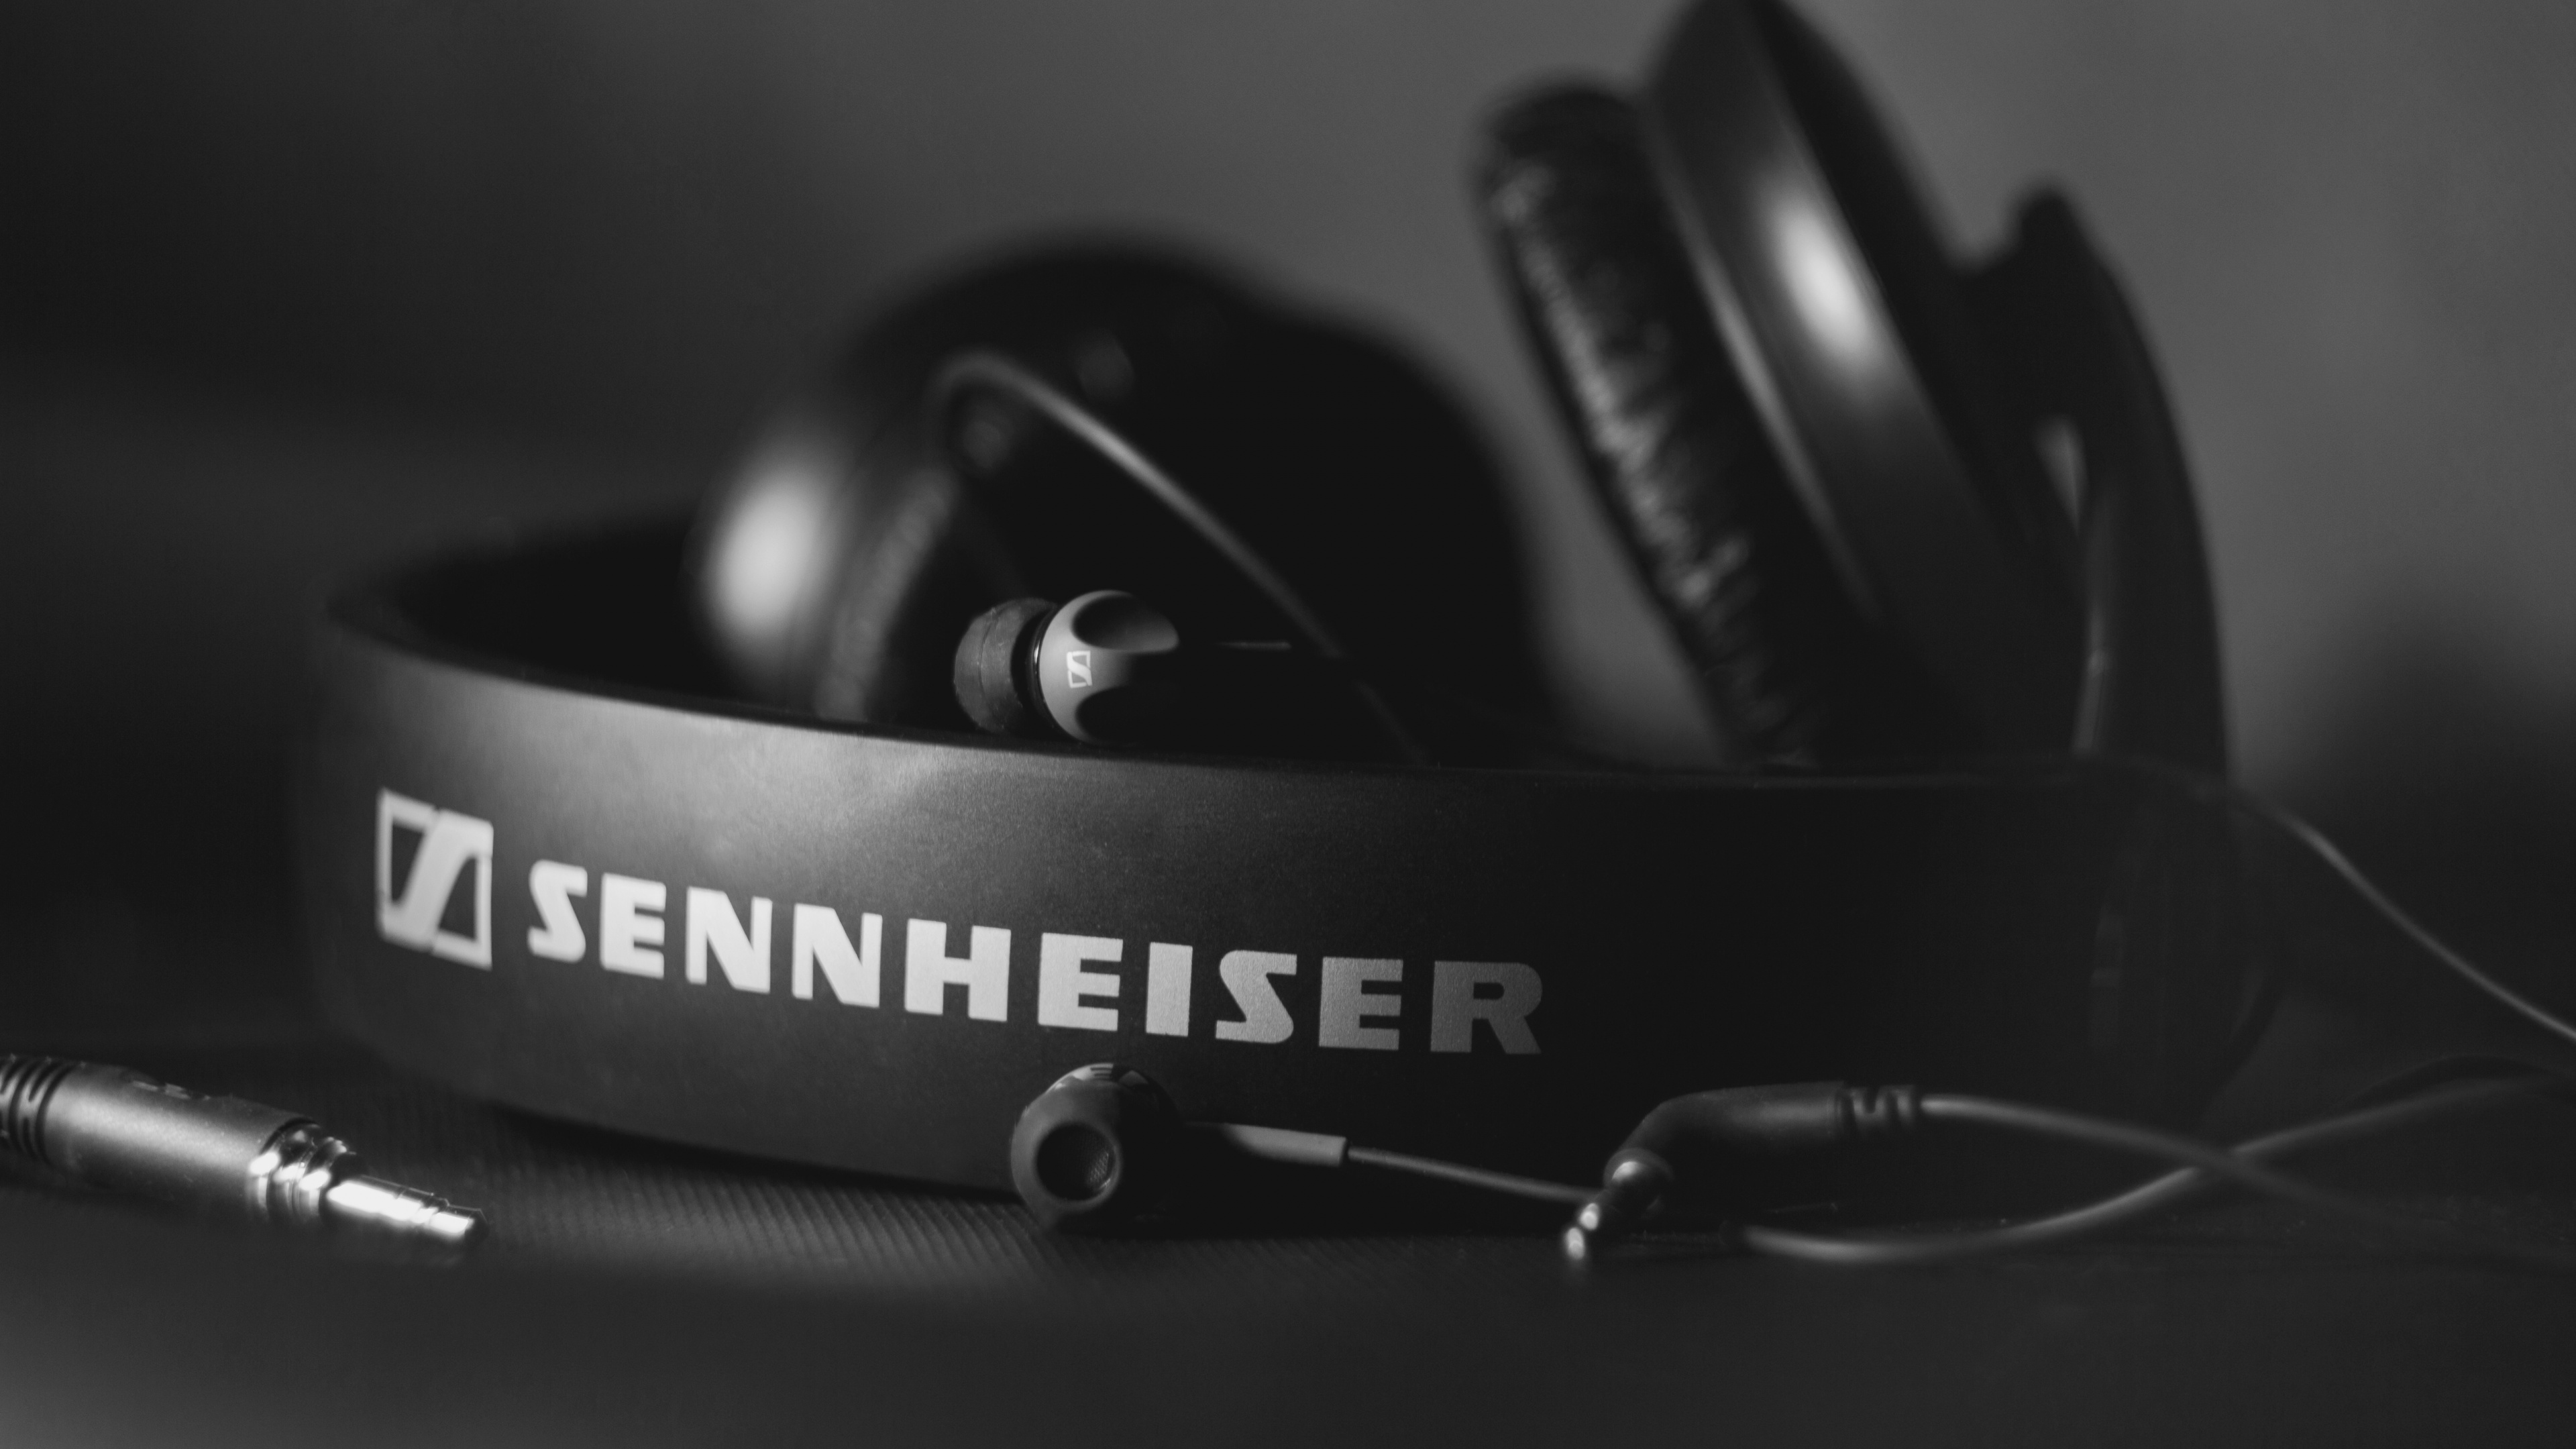 Kopfhörer, Schwarz Und Weiß, Sennheiser, Headsets, Audiogeräten. Wallpaper in 3840x2160 Resolution